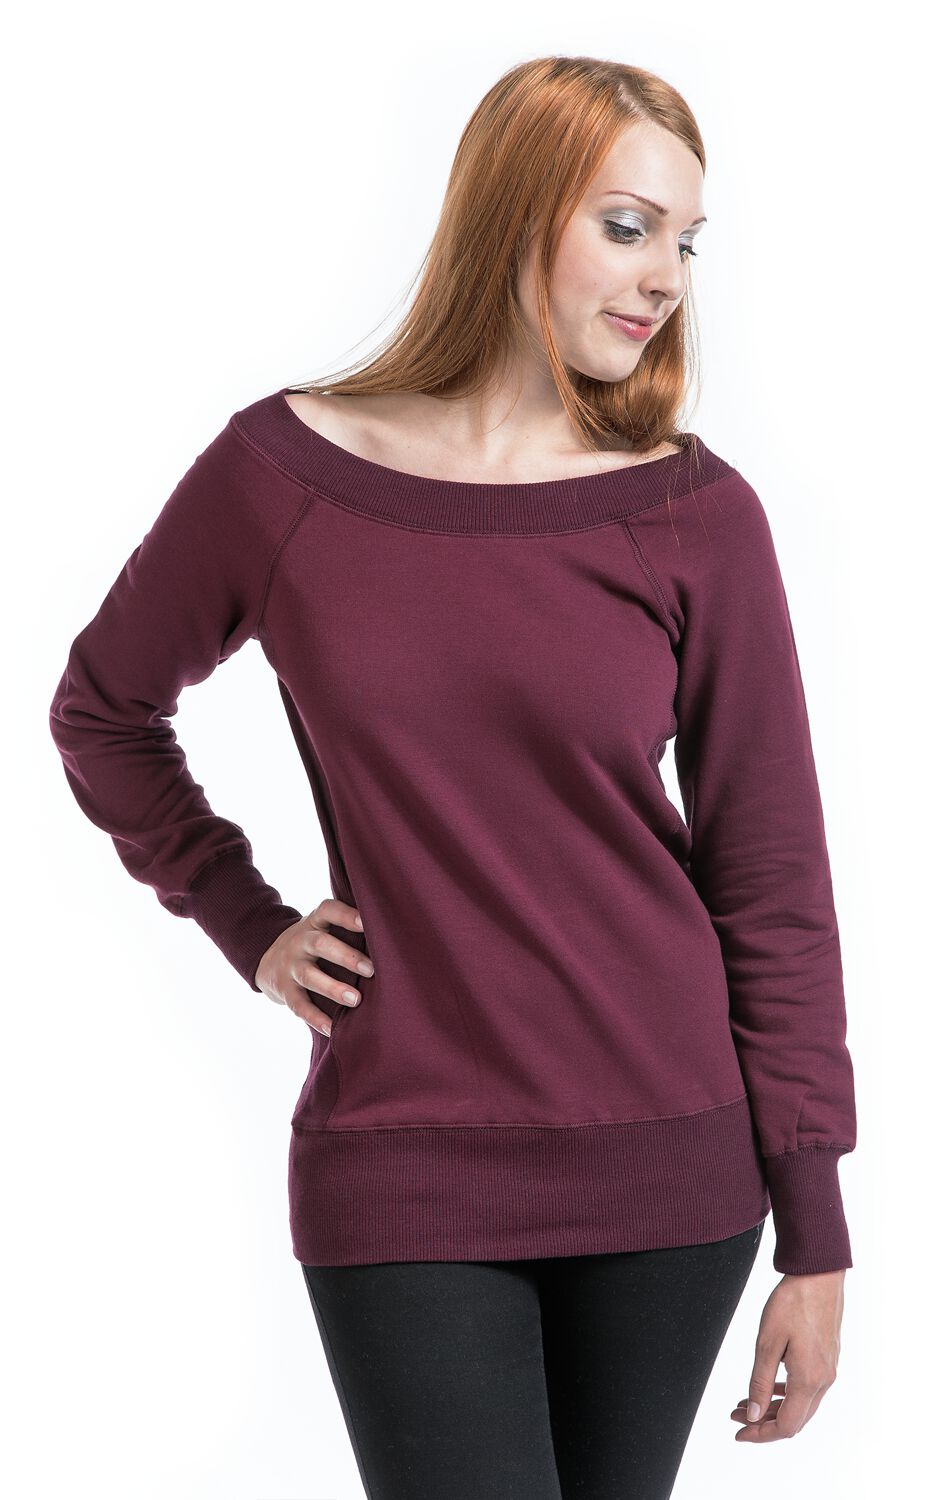 Sweater Sweatshirt Buy online now